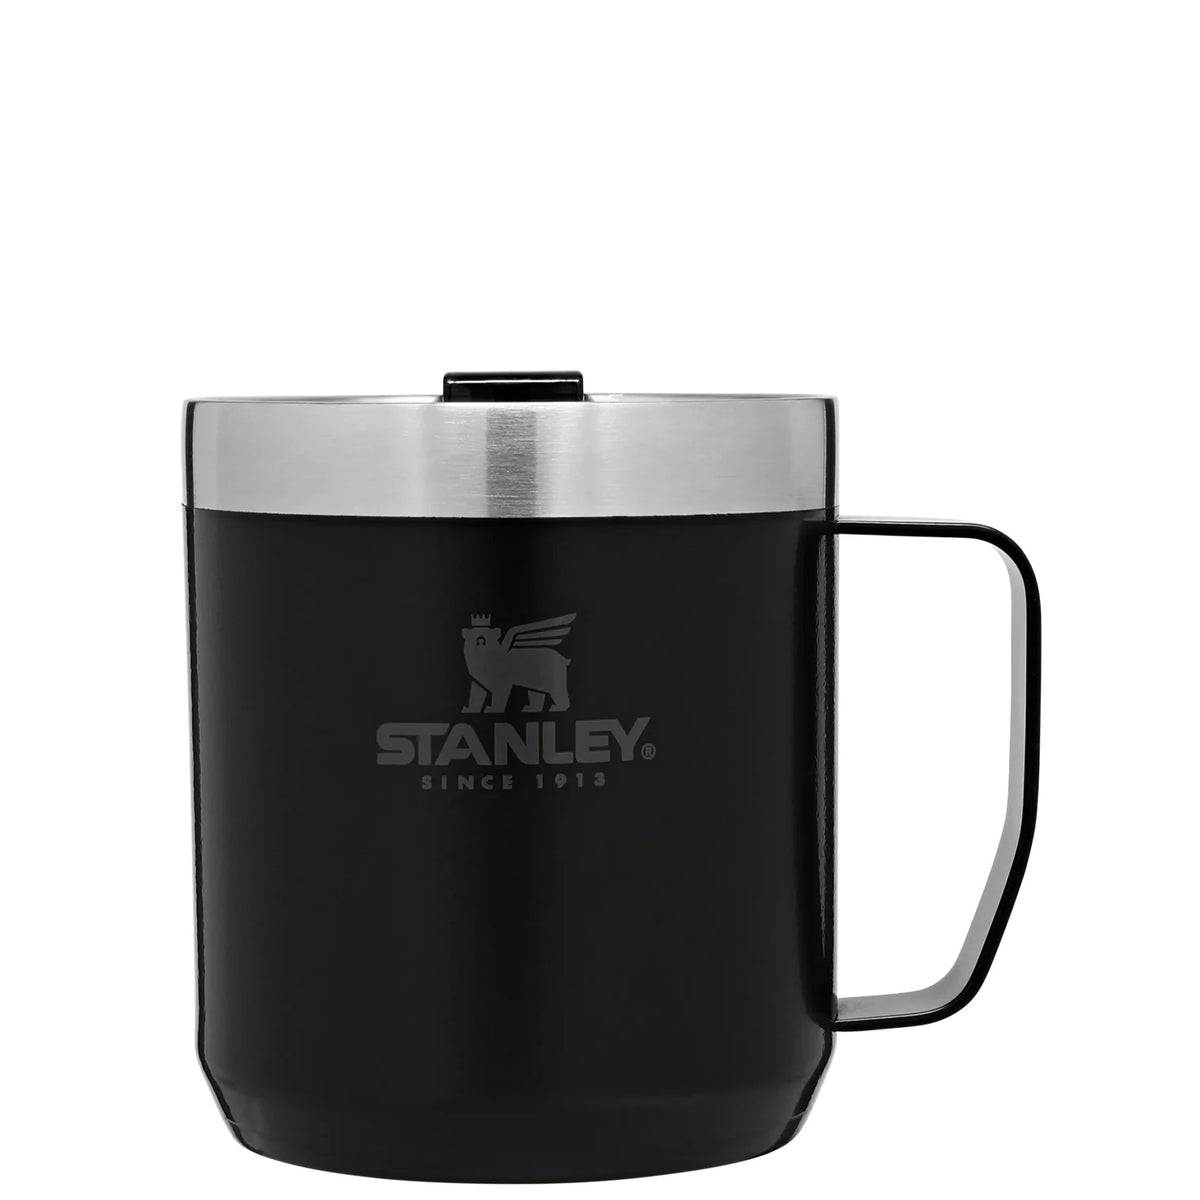 Stanley Classic Legendary Camp Mug - 12 oz.